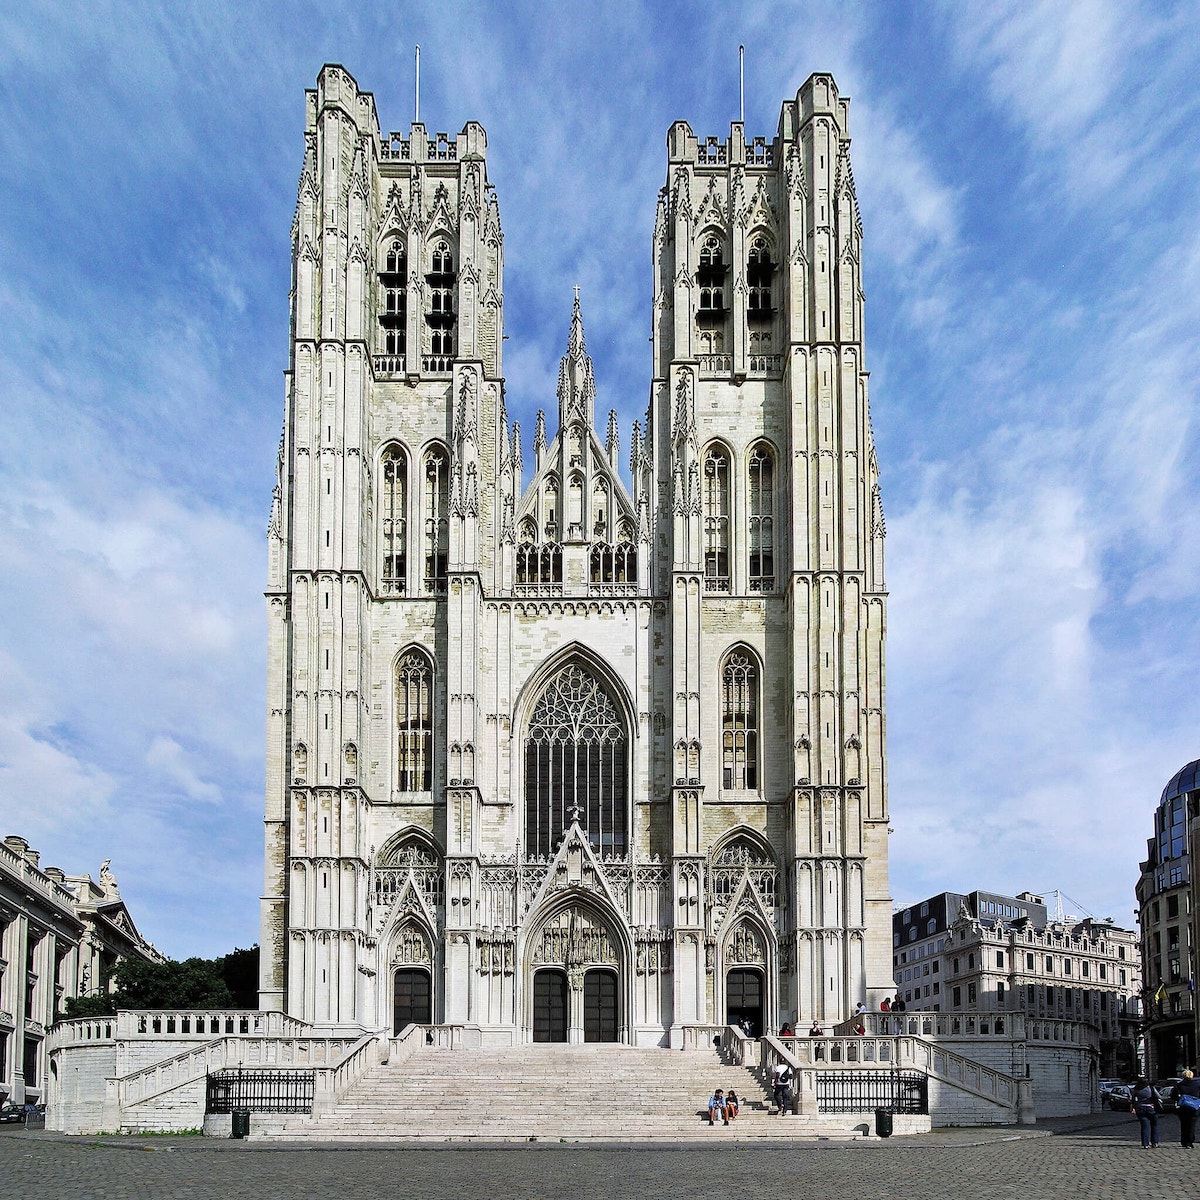 St Michael and St Gudula Cathedral - Tempat Wisata Favorit dan Terkenal di Brussel